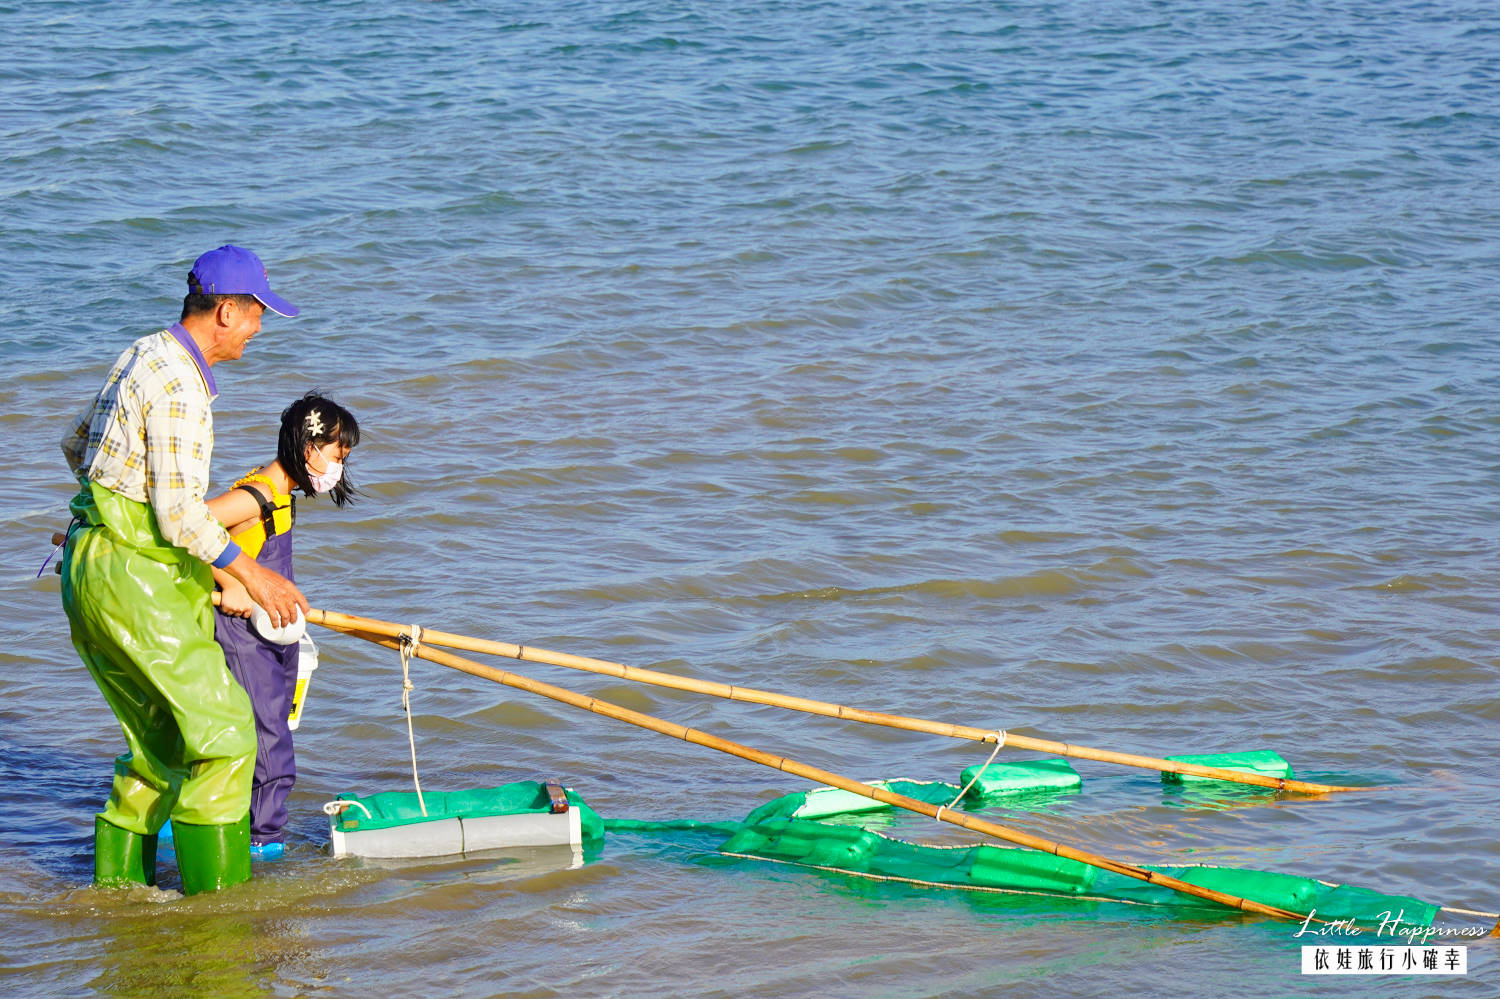 澎湖櫓魚栽體驗，在成功村潮間帶實作快消失的傳統漁法，單人就能操作三角網捕魚苗